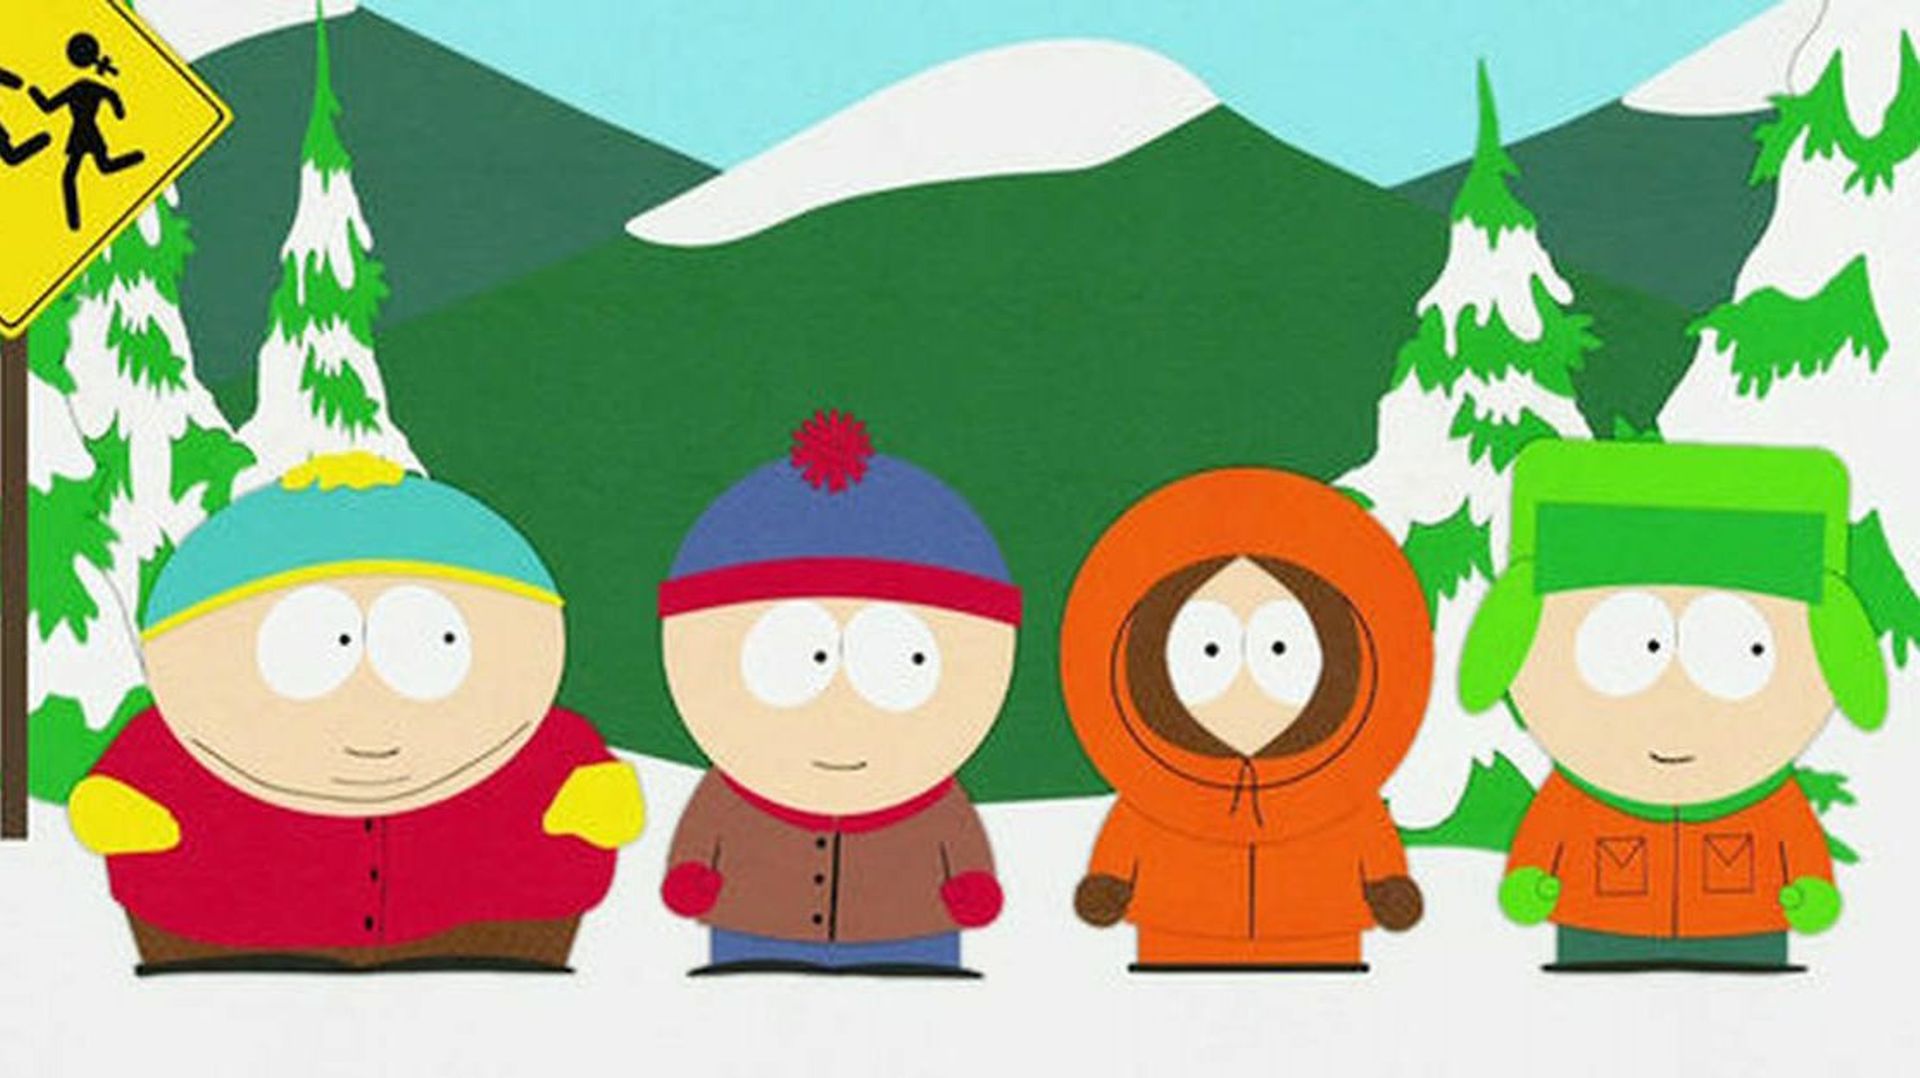 Créée en 1997 par Trey Parker et Matt Stone, South Park en est déjà à sa 26e saison. On y suit Cartman, Stan, Kyle et Kenny, quatre écoliers qui vivent dans la ville de South Park.